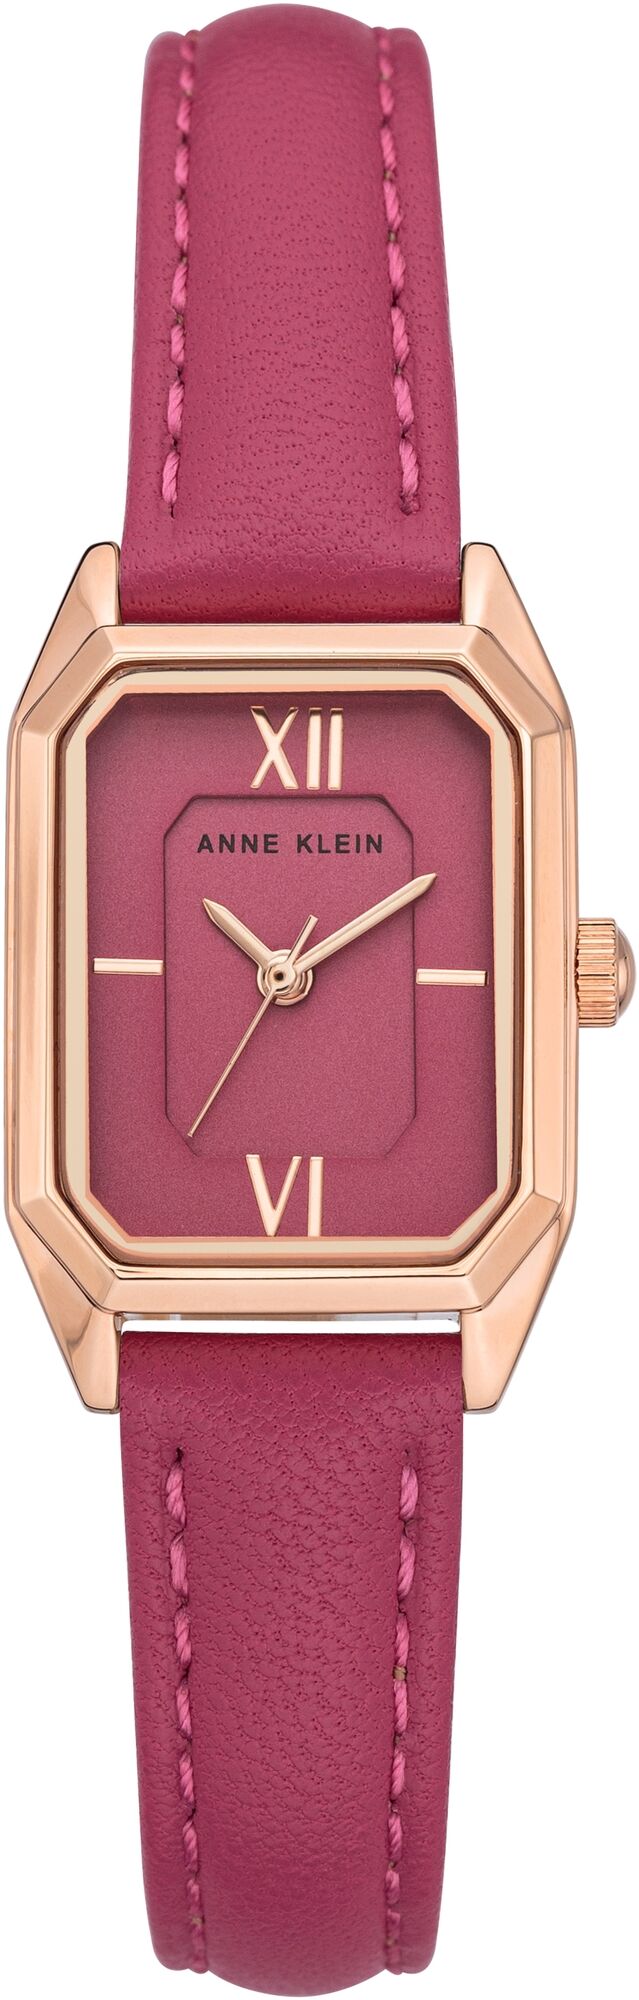 Женские наручные часы Anne Klein Leather 3968RGPK